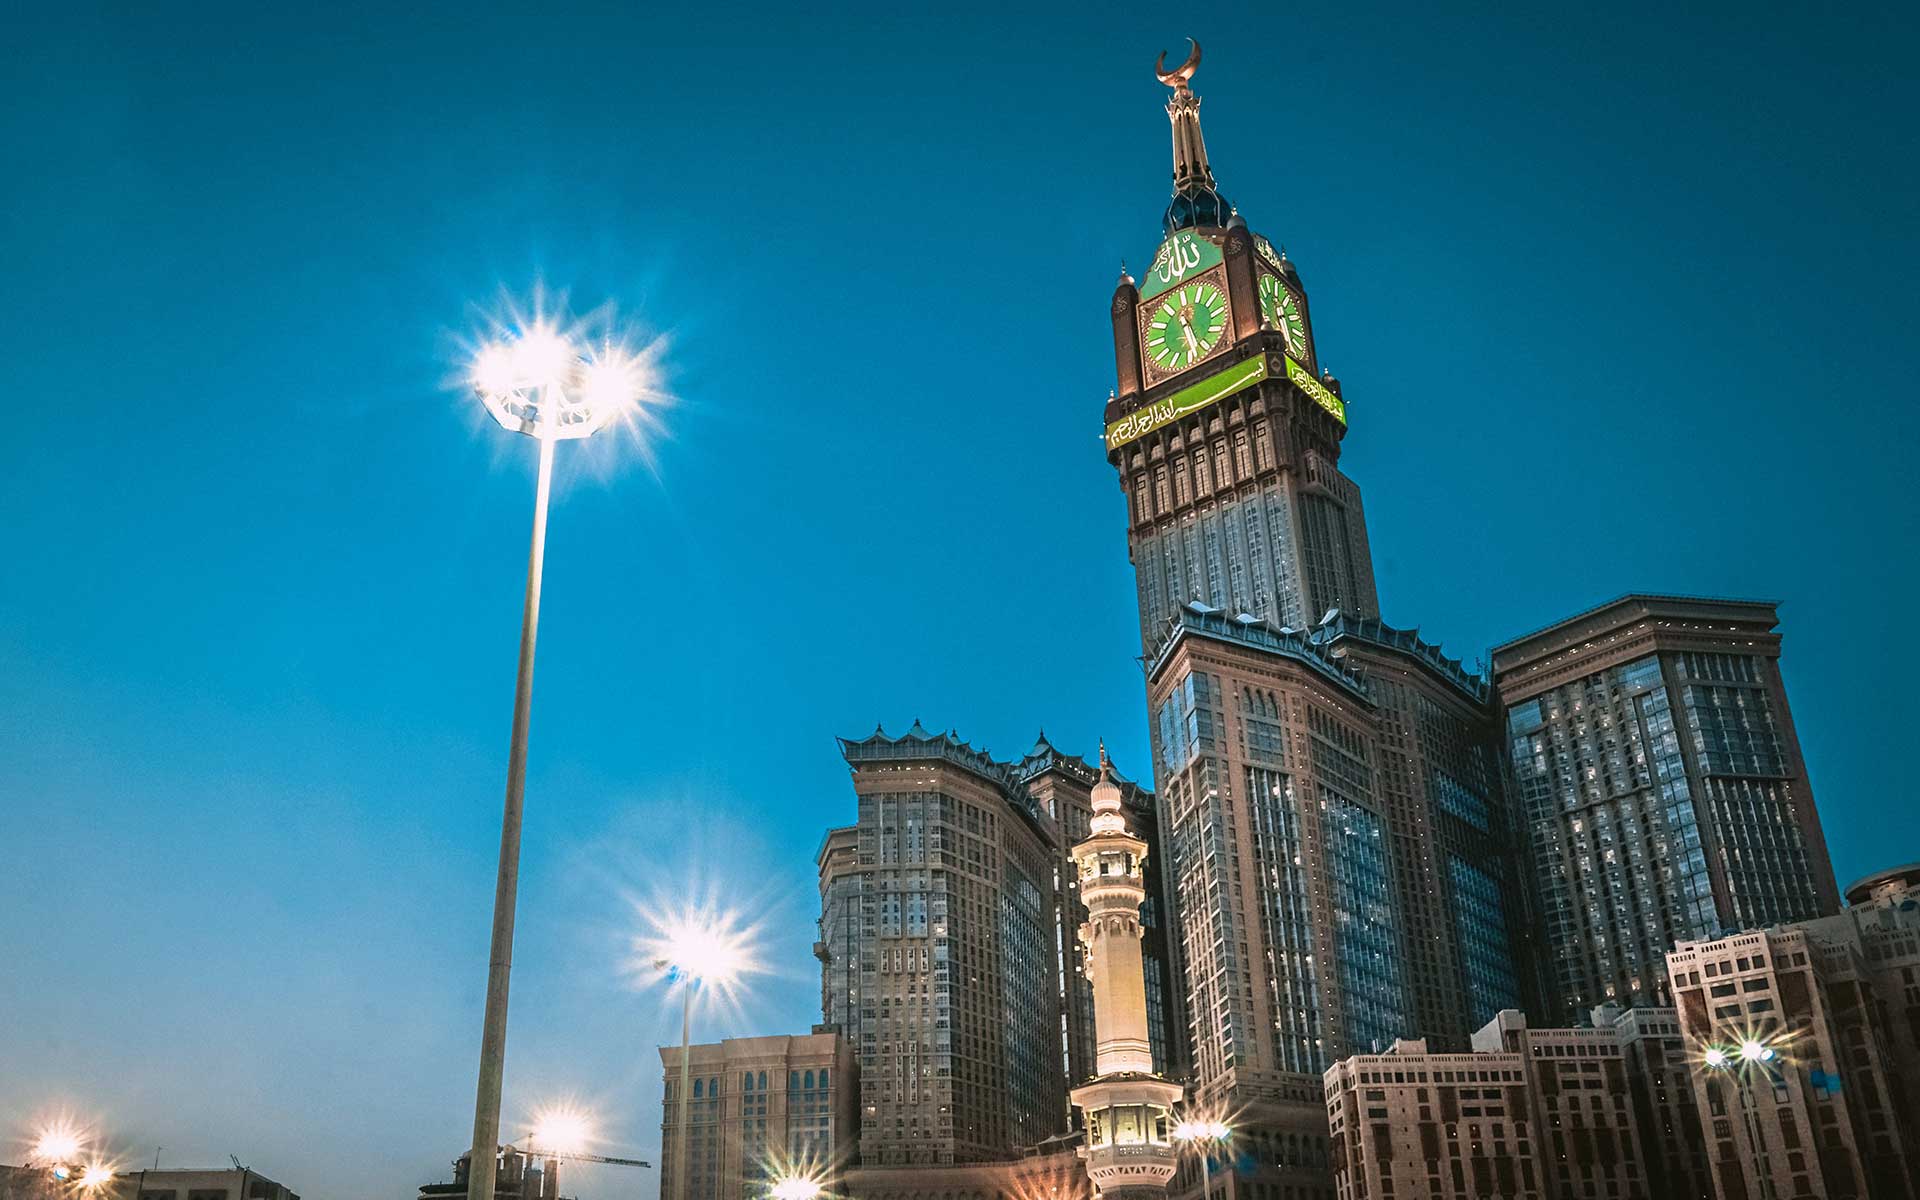 Fairmont” Makkah Clock Royal Tower Hotel”